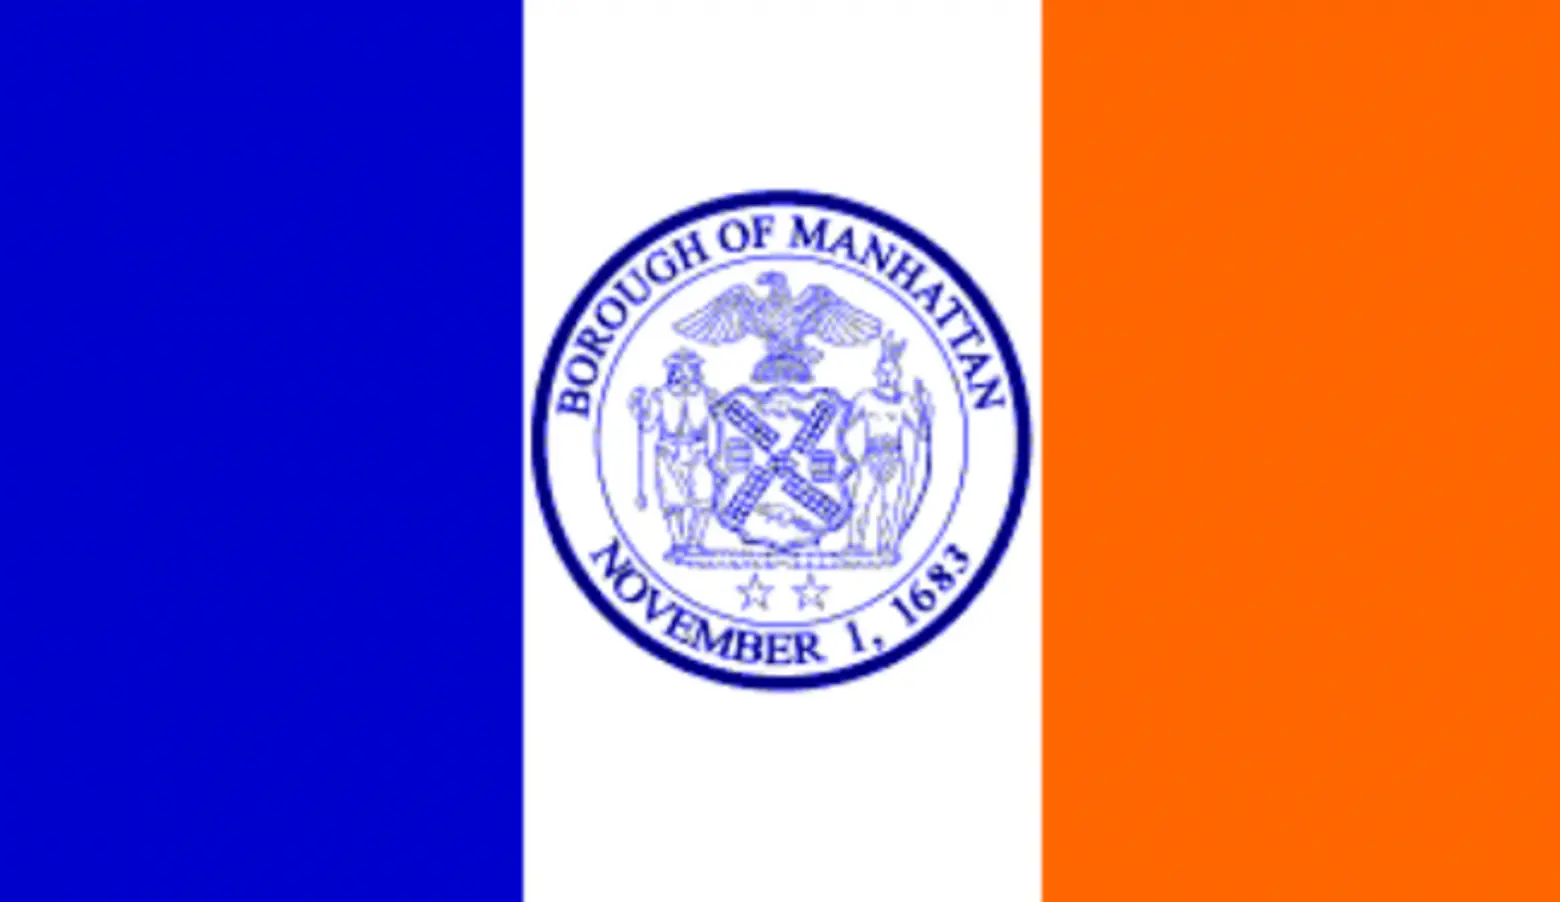 Manhattan Flag, Borough Flags, Flag Day